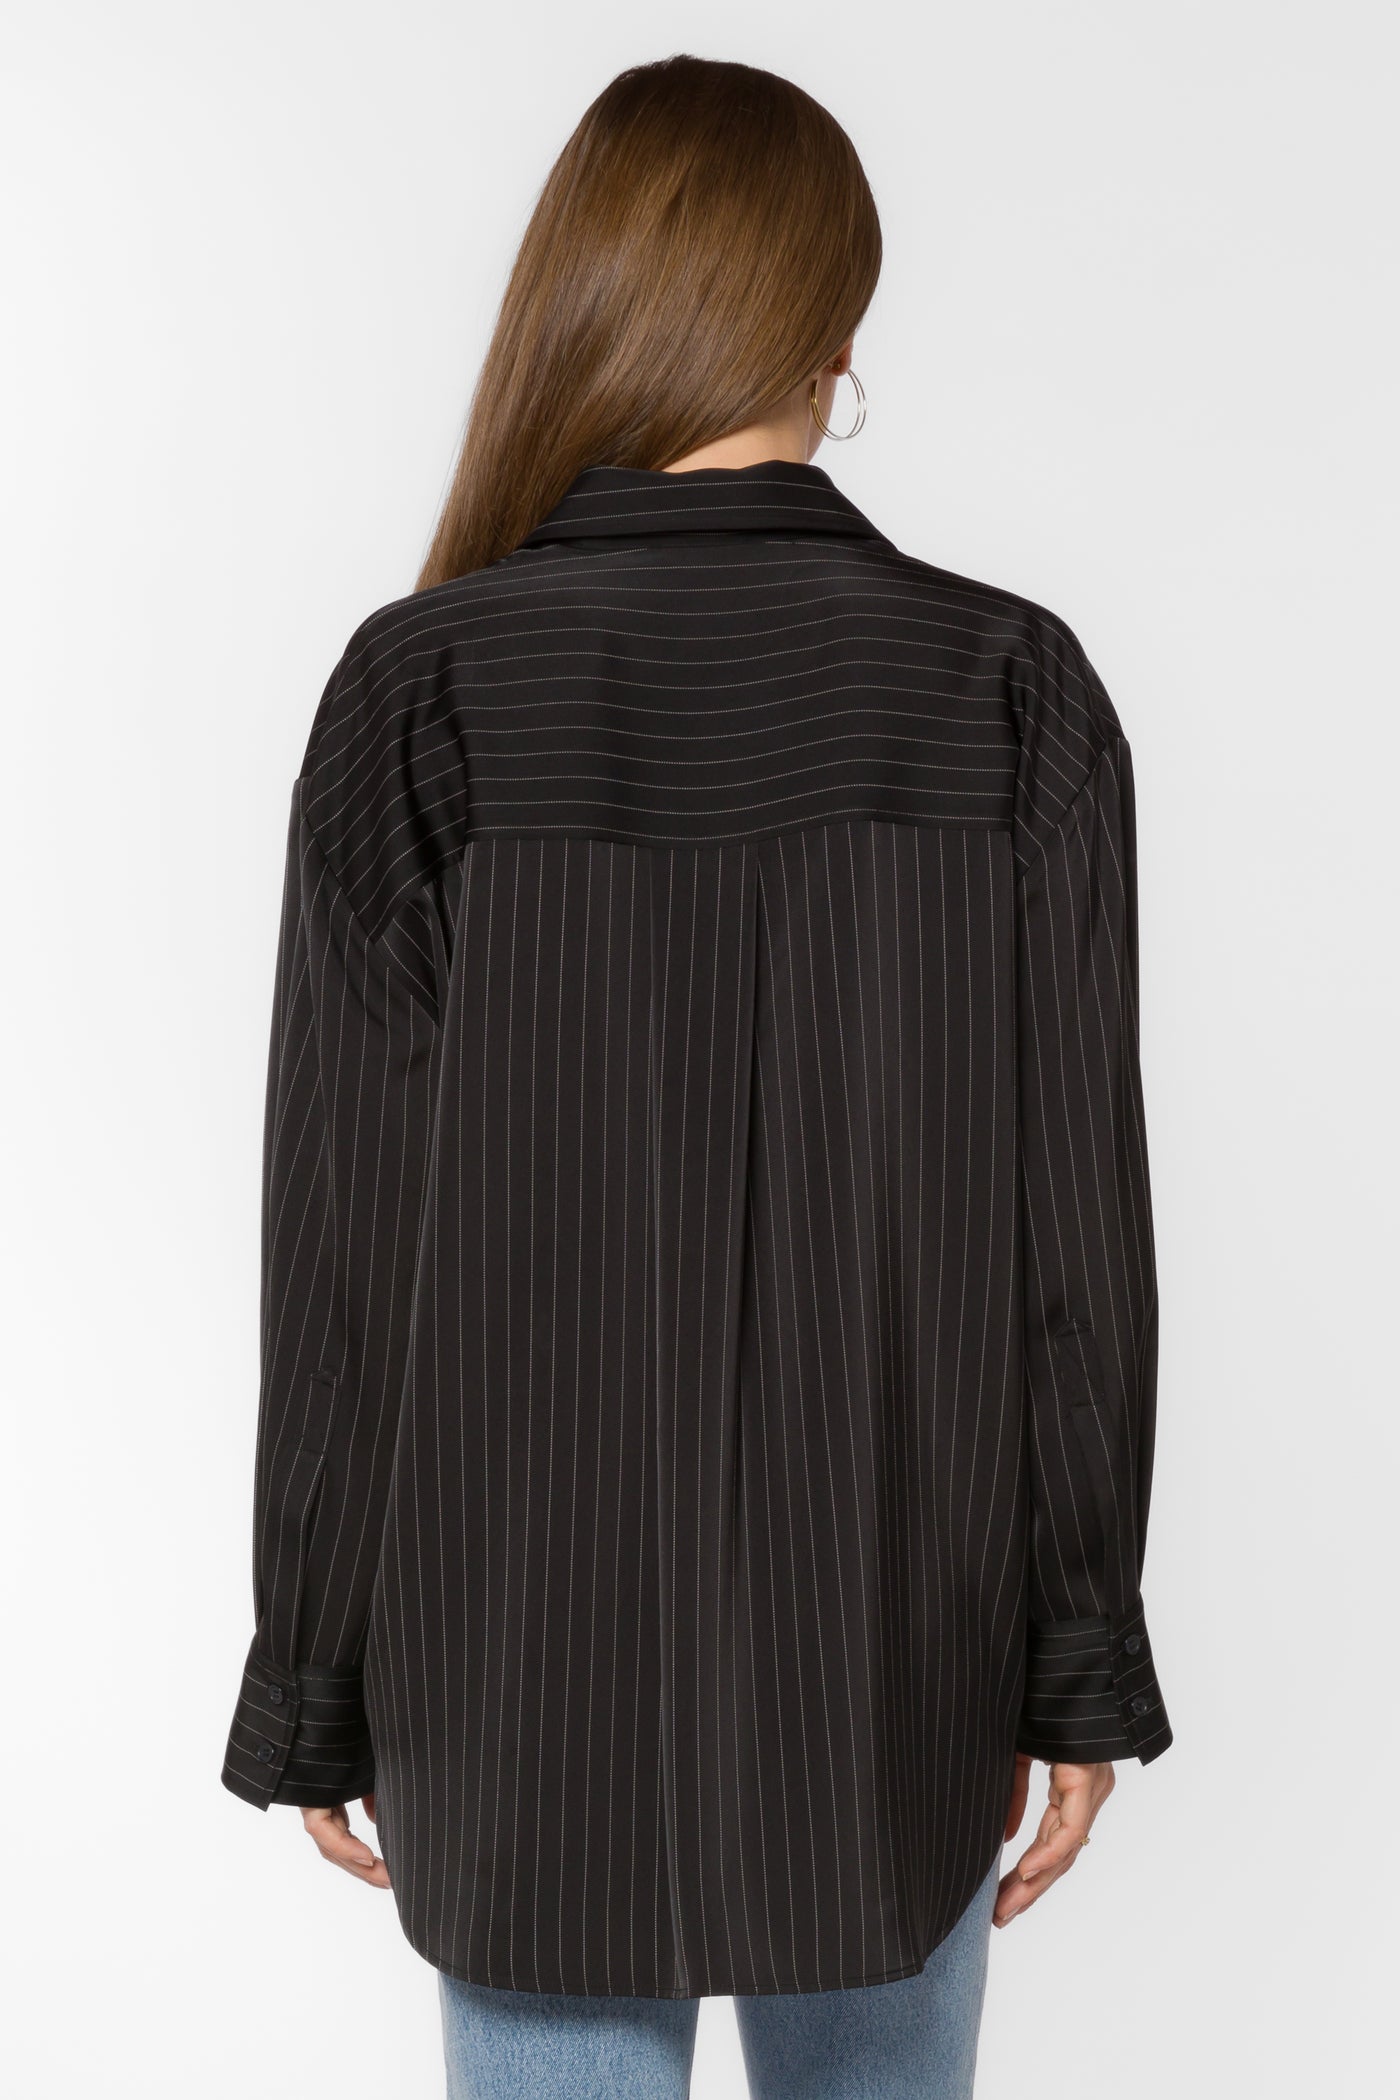 Sutton Black Stripe Shirt - Tops - Velvet Heart Clothing